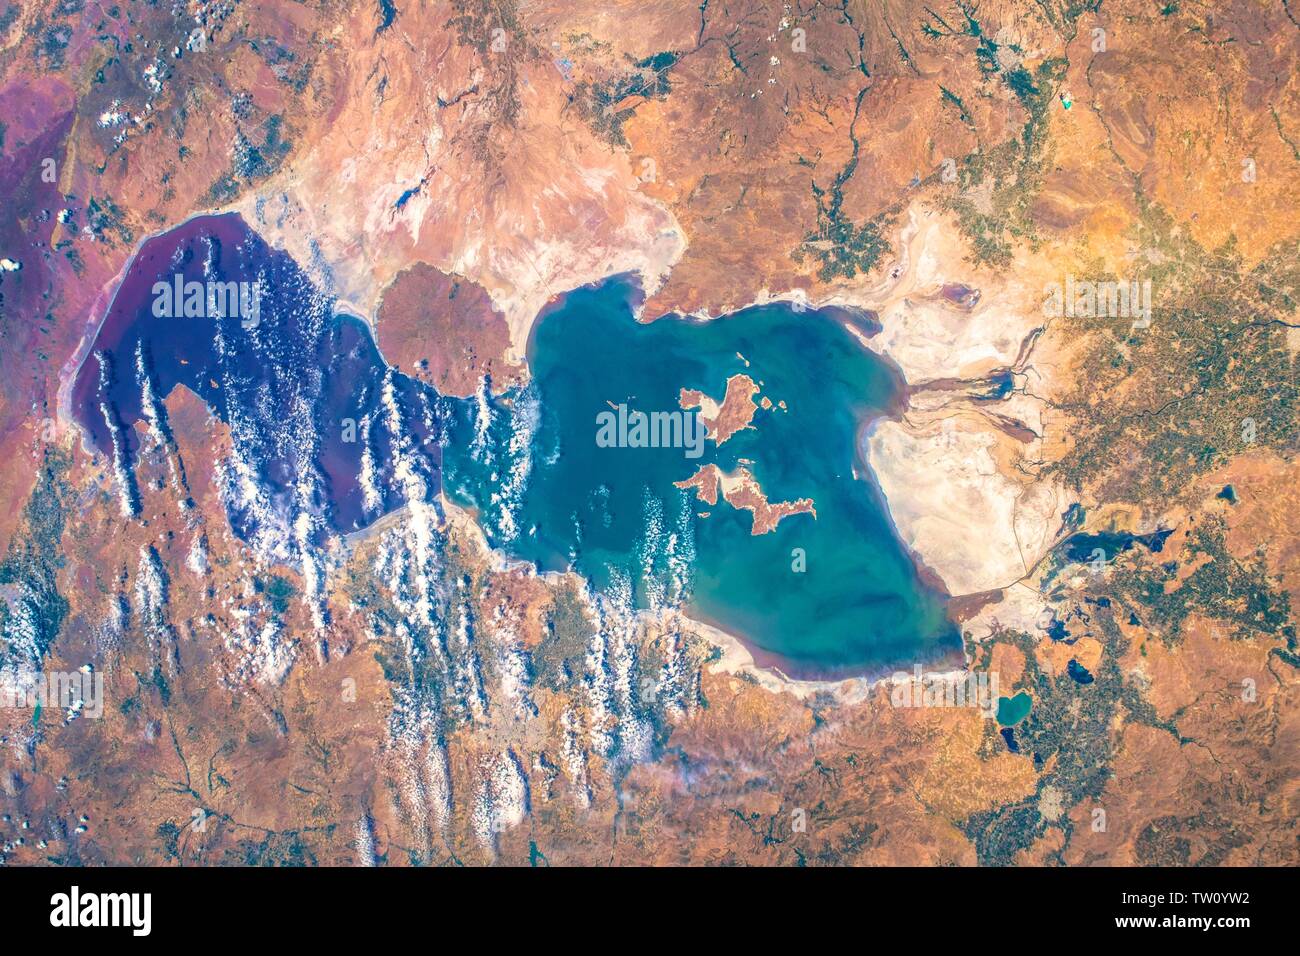 Lebendige Farben Kruste unseres Heimatplaneten. Die Schönheit in der Natur unseres Planeten Erde gesehen von der Internationalen Raumstation (ISS). Das Bild ist eine Publi Stockfoto